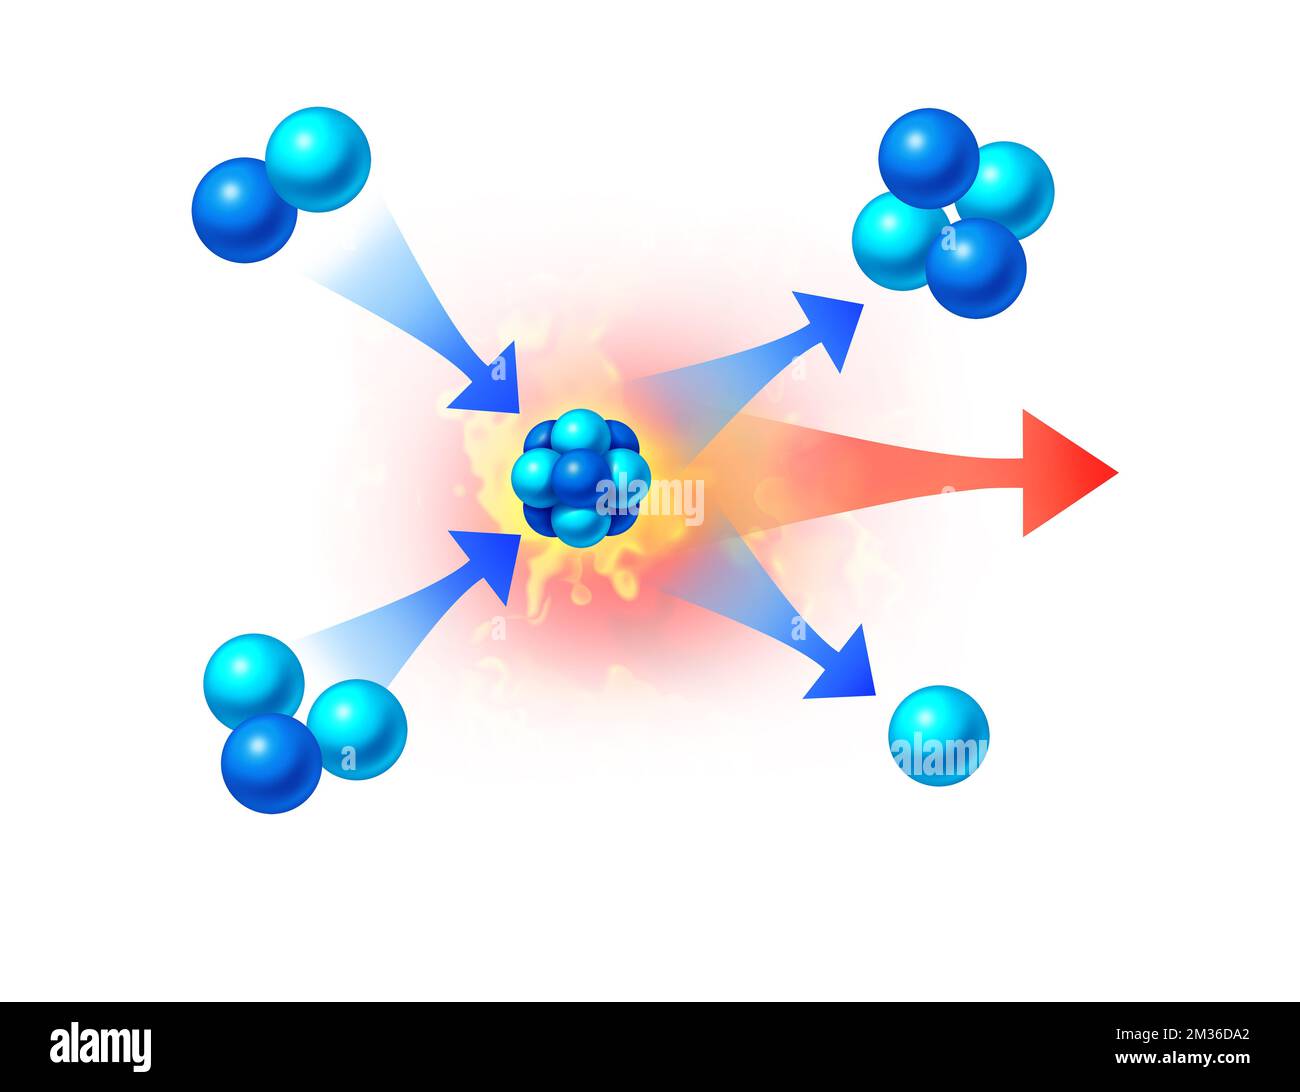 Concetto di energia di fusione e fisica di generazione di energia nucleare simbolo di scienza come forme astratte che rappresentano elementi concettuali microscopici con elio Foto Stock